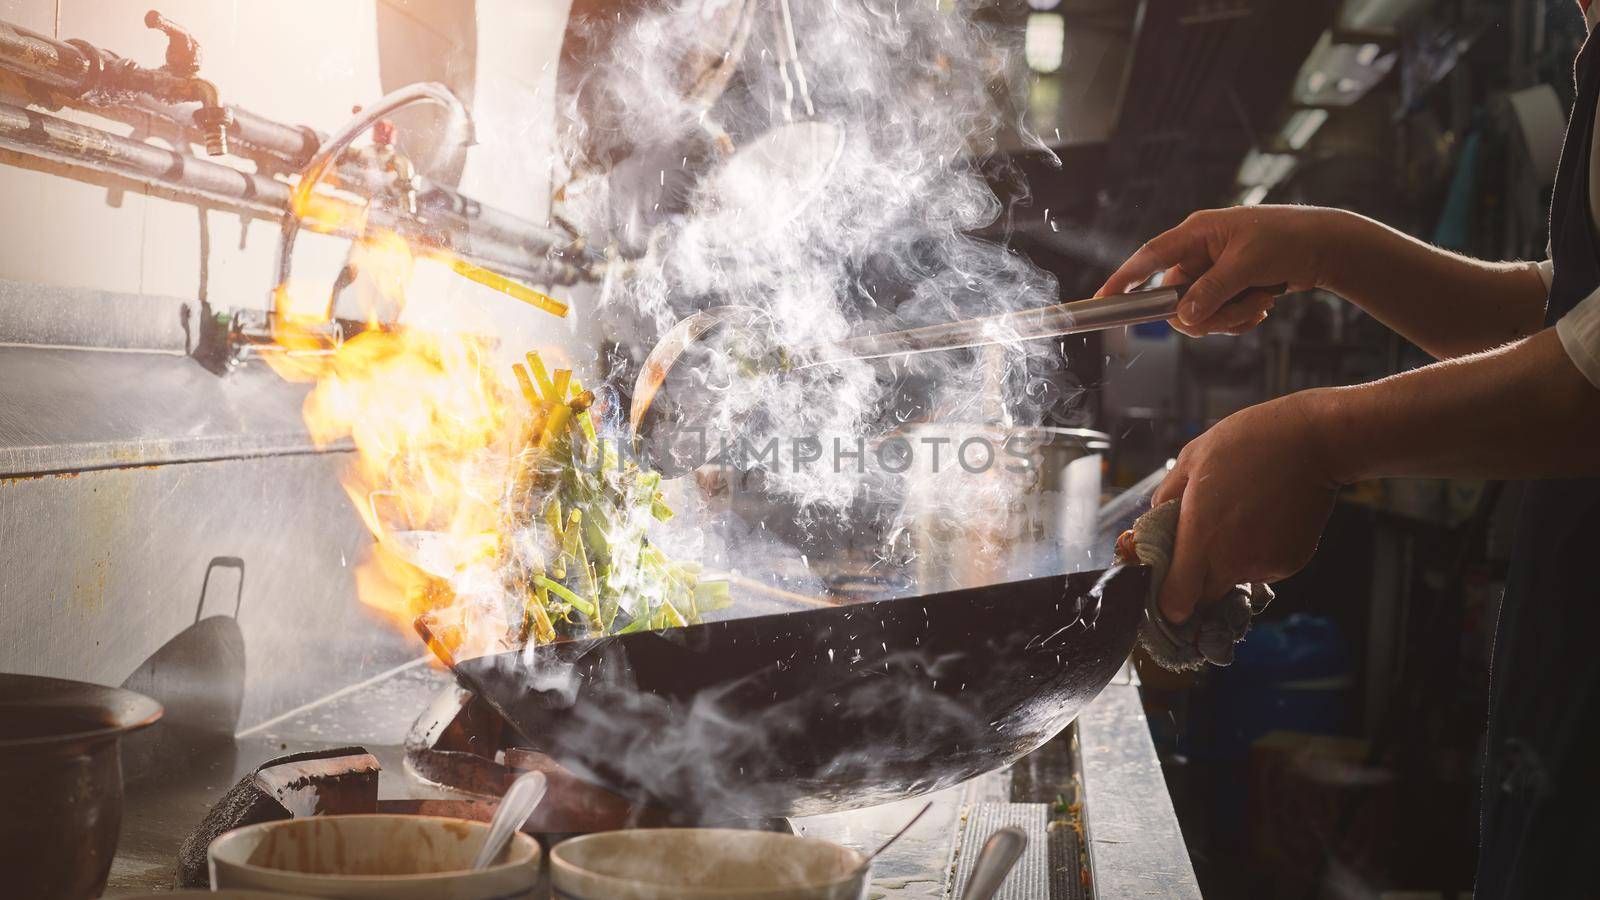 Chef stir fry cooking with wok in restaurant kitchen